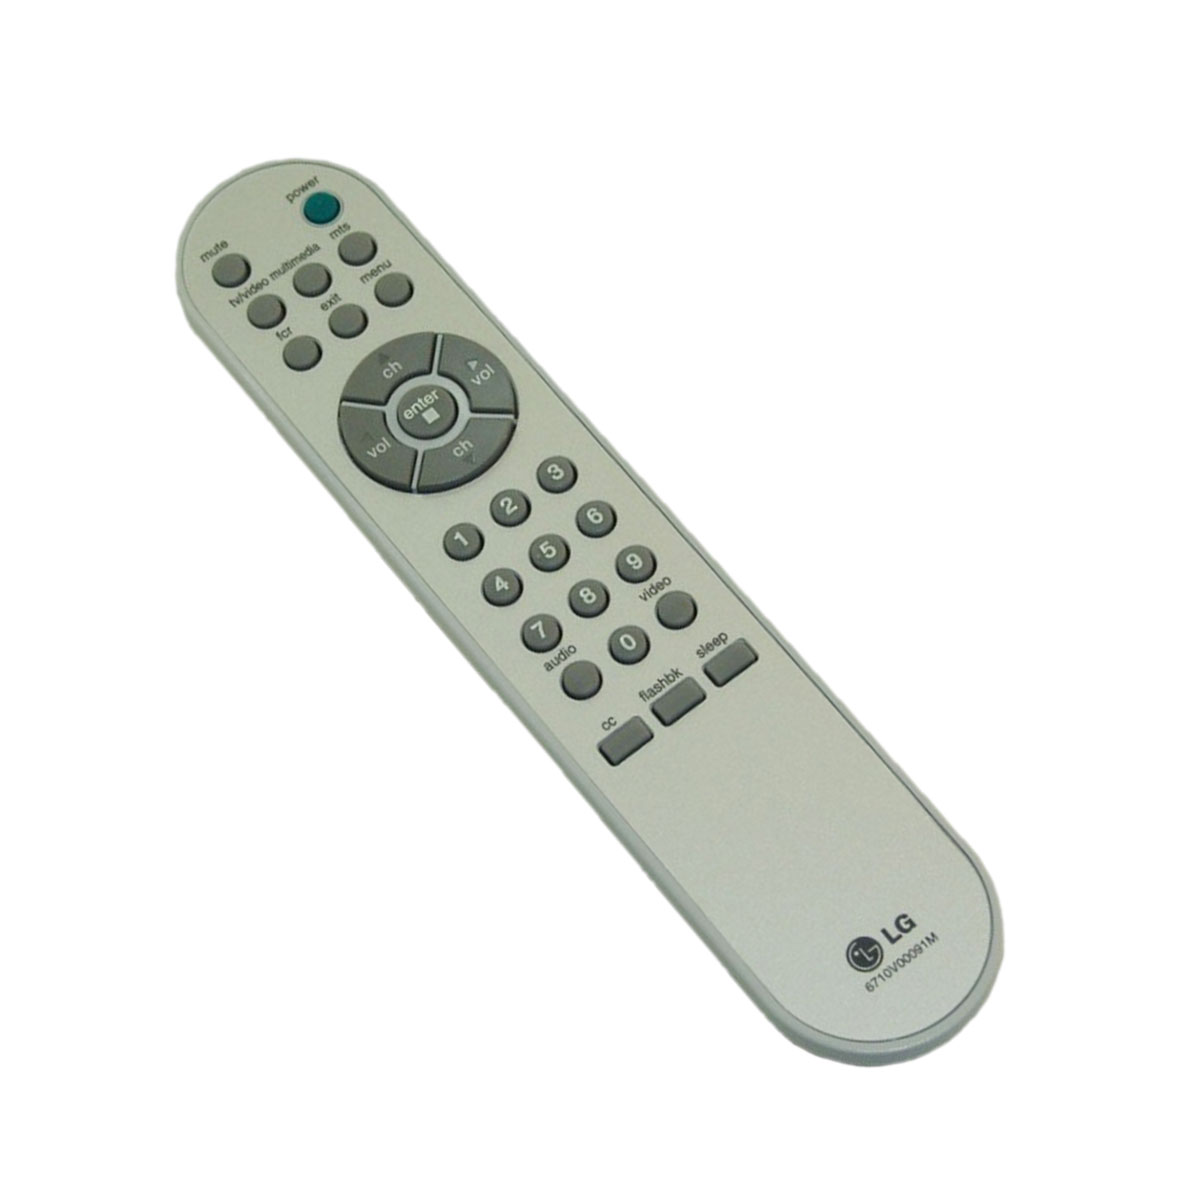 LG Original TV Remote Control for LG 15LA6R Television